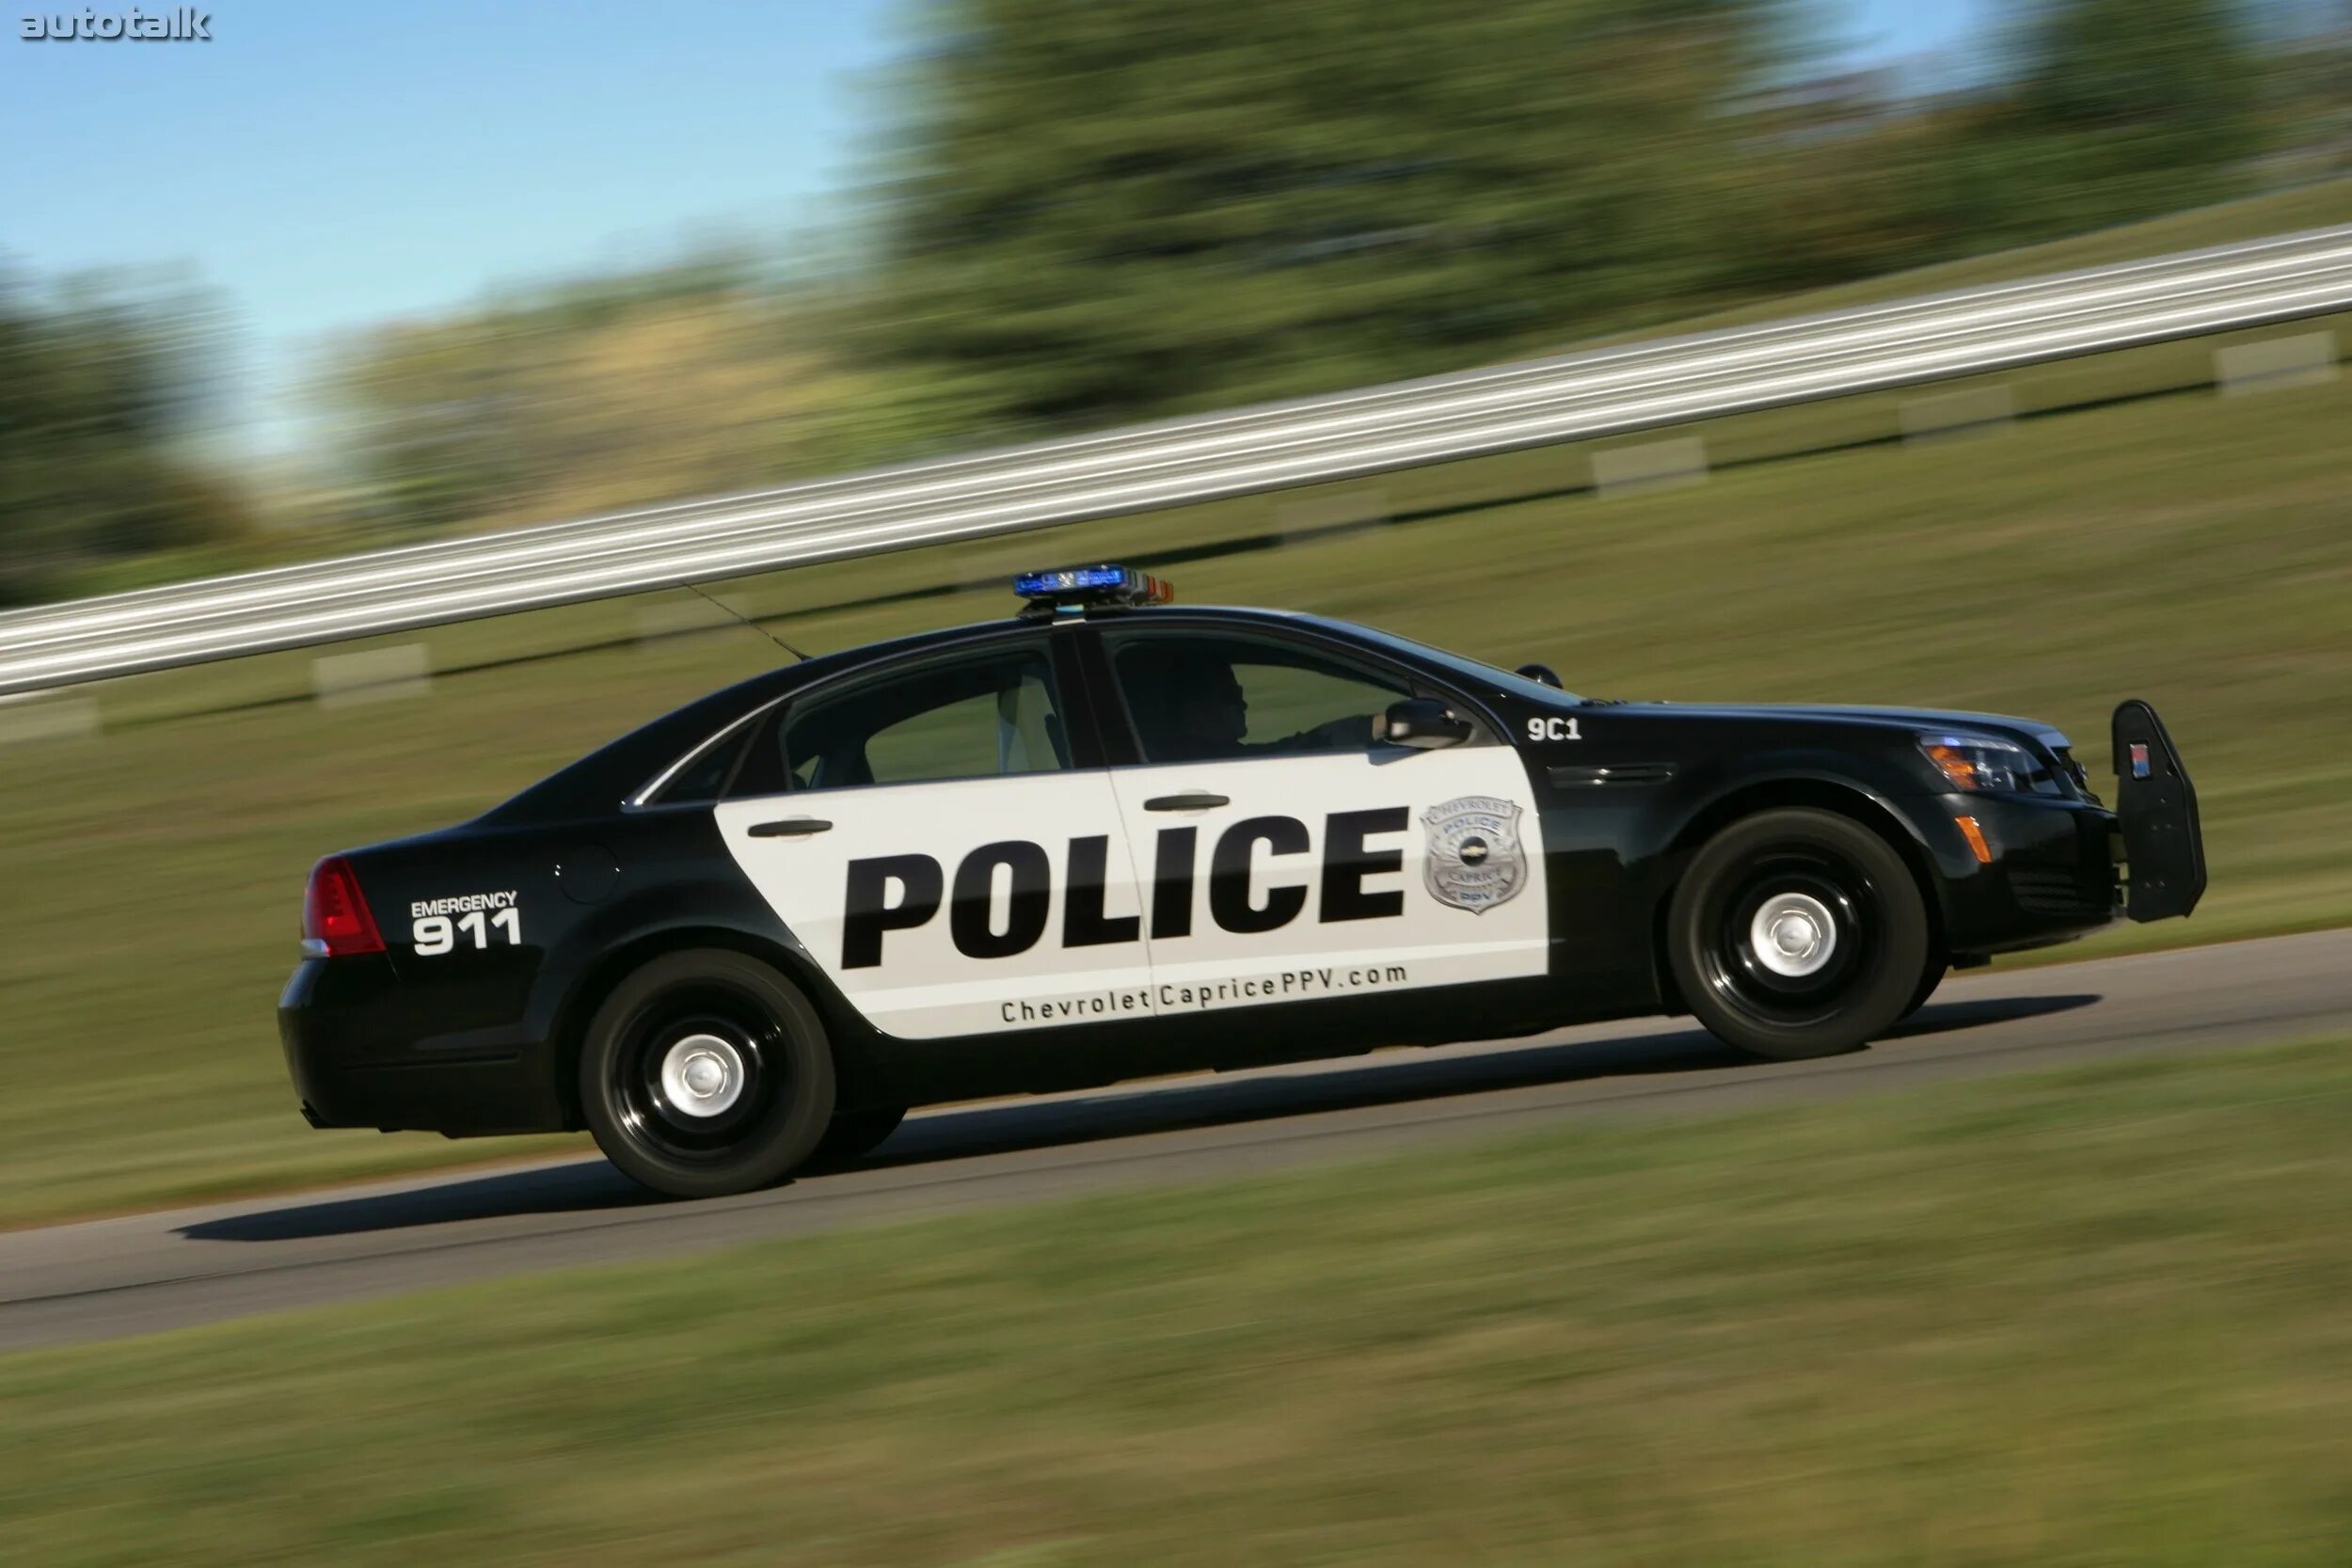 Chevrolet Caprice Police 2010. Chevrolet Caprice Police Patrol vehicle. Chevrolet Caprice Police car. Chevrolet Caprice 9c1 и PPV..